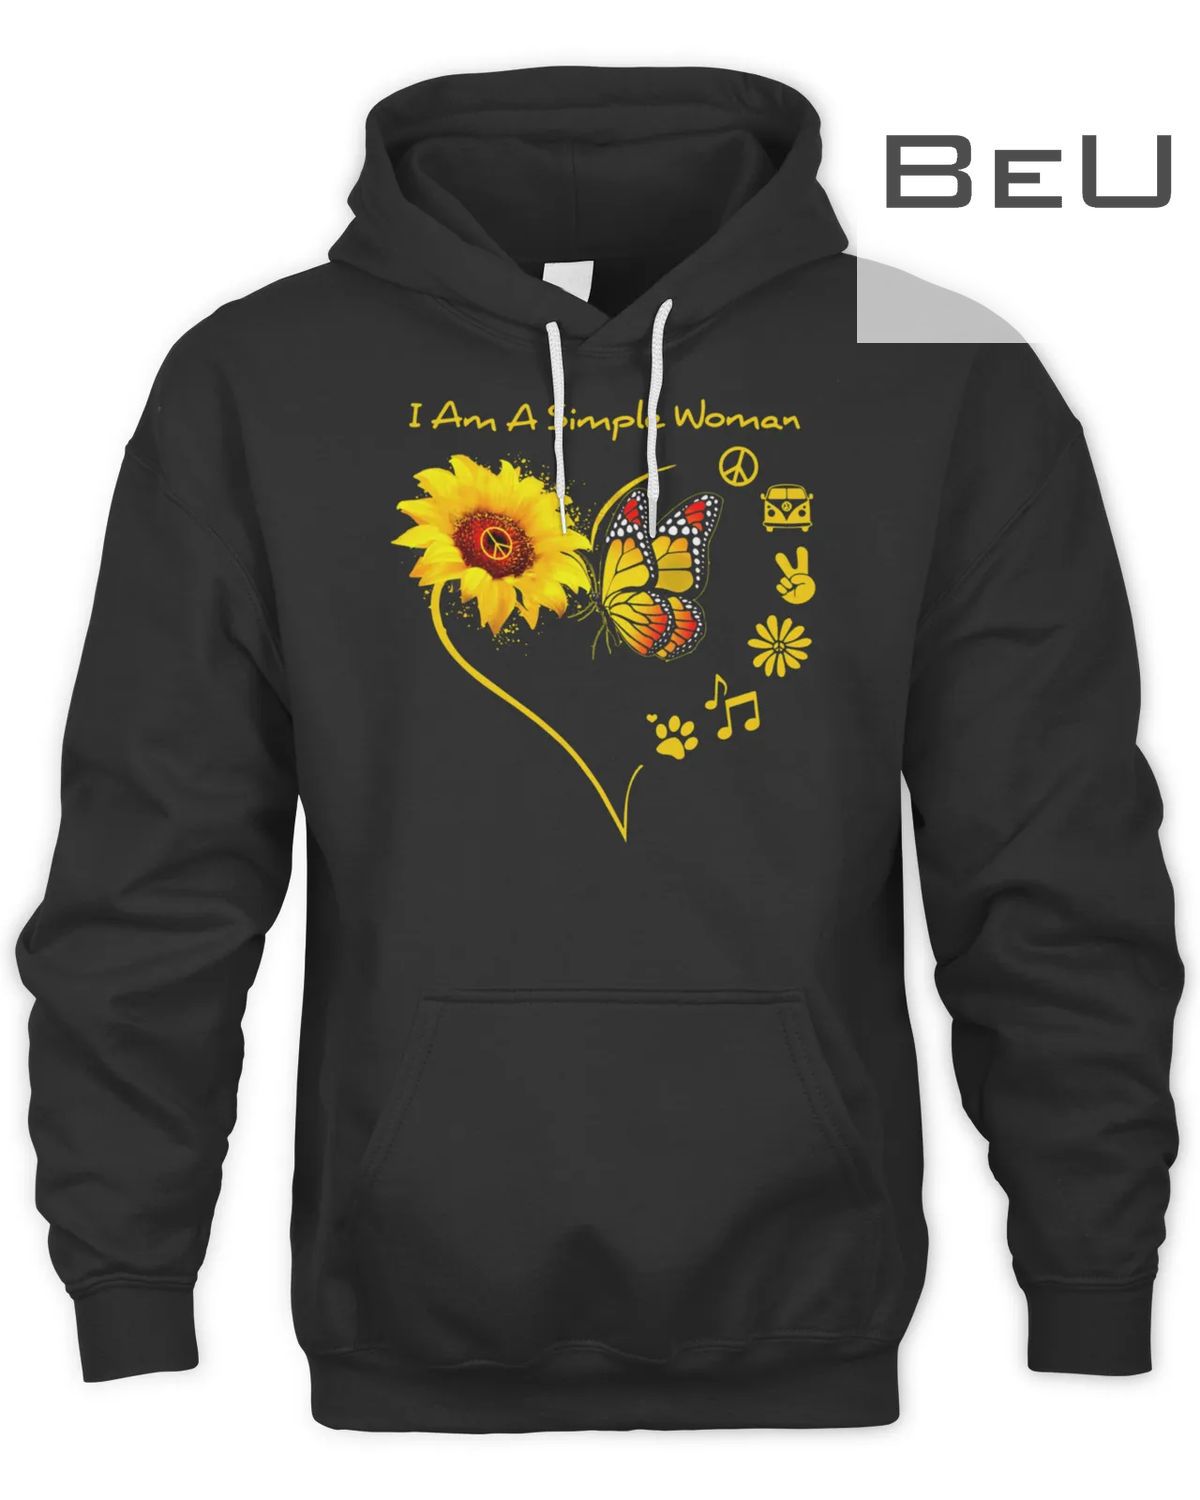 Official 849 I Am A Simple Woman Heart Sunflower T-shirt